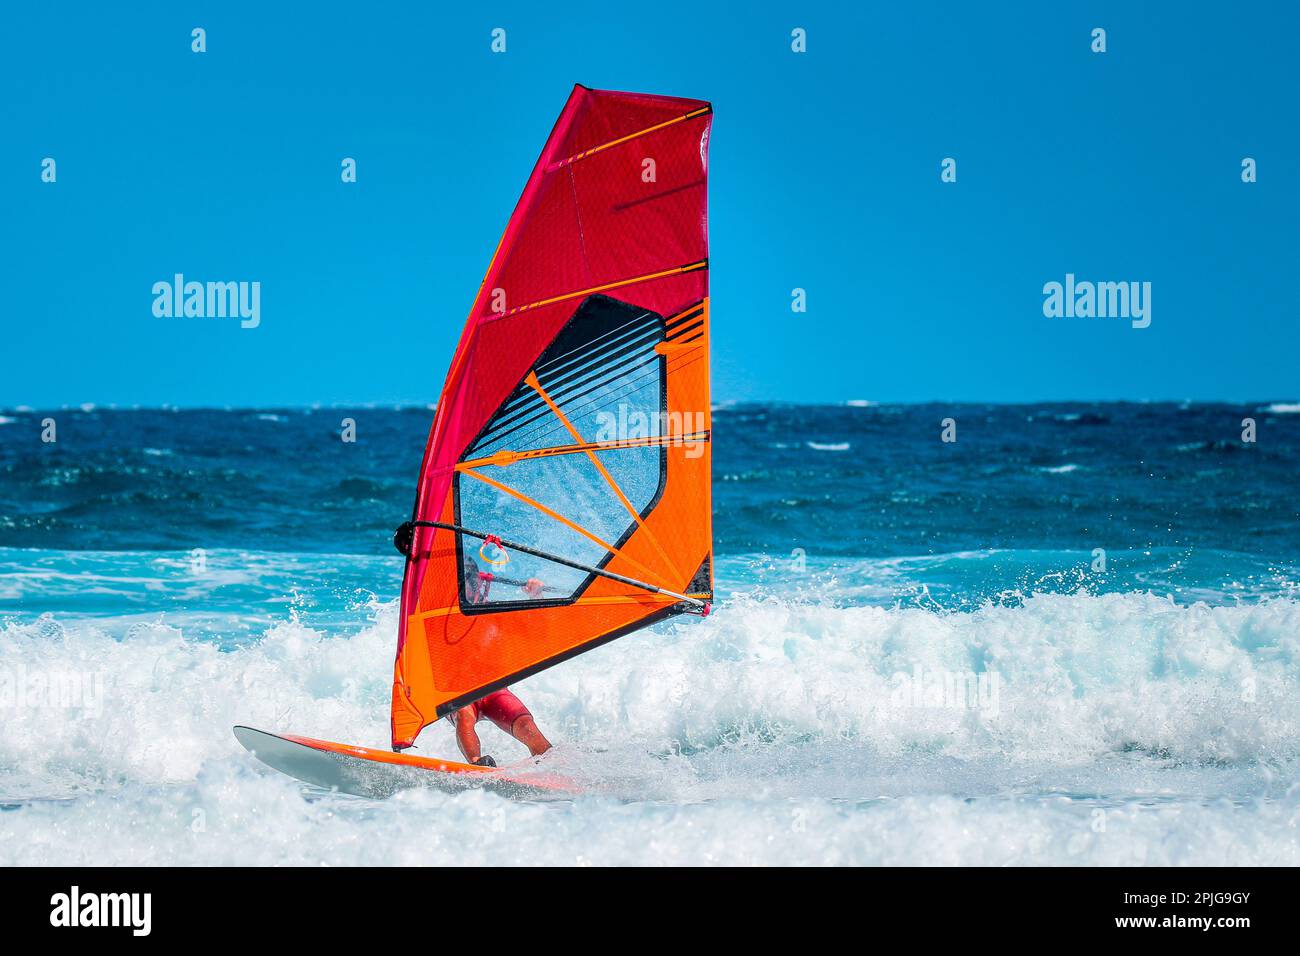 sport acquatici: windsurf con vela rossa e arancione che cavalcano le onde durante un pomeriggio estivo soleggiato. Foto Stock